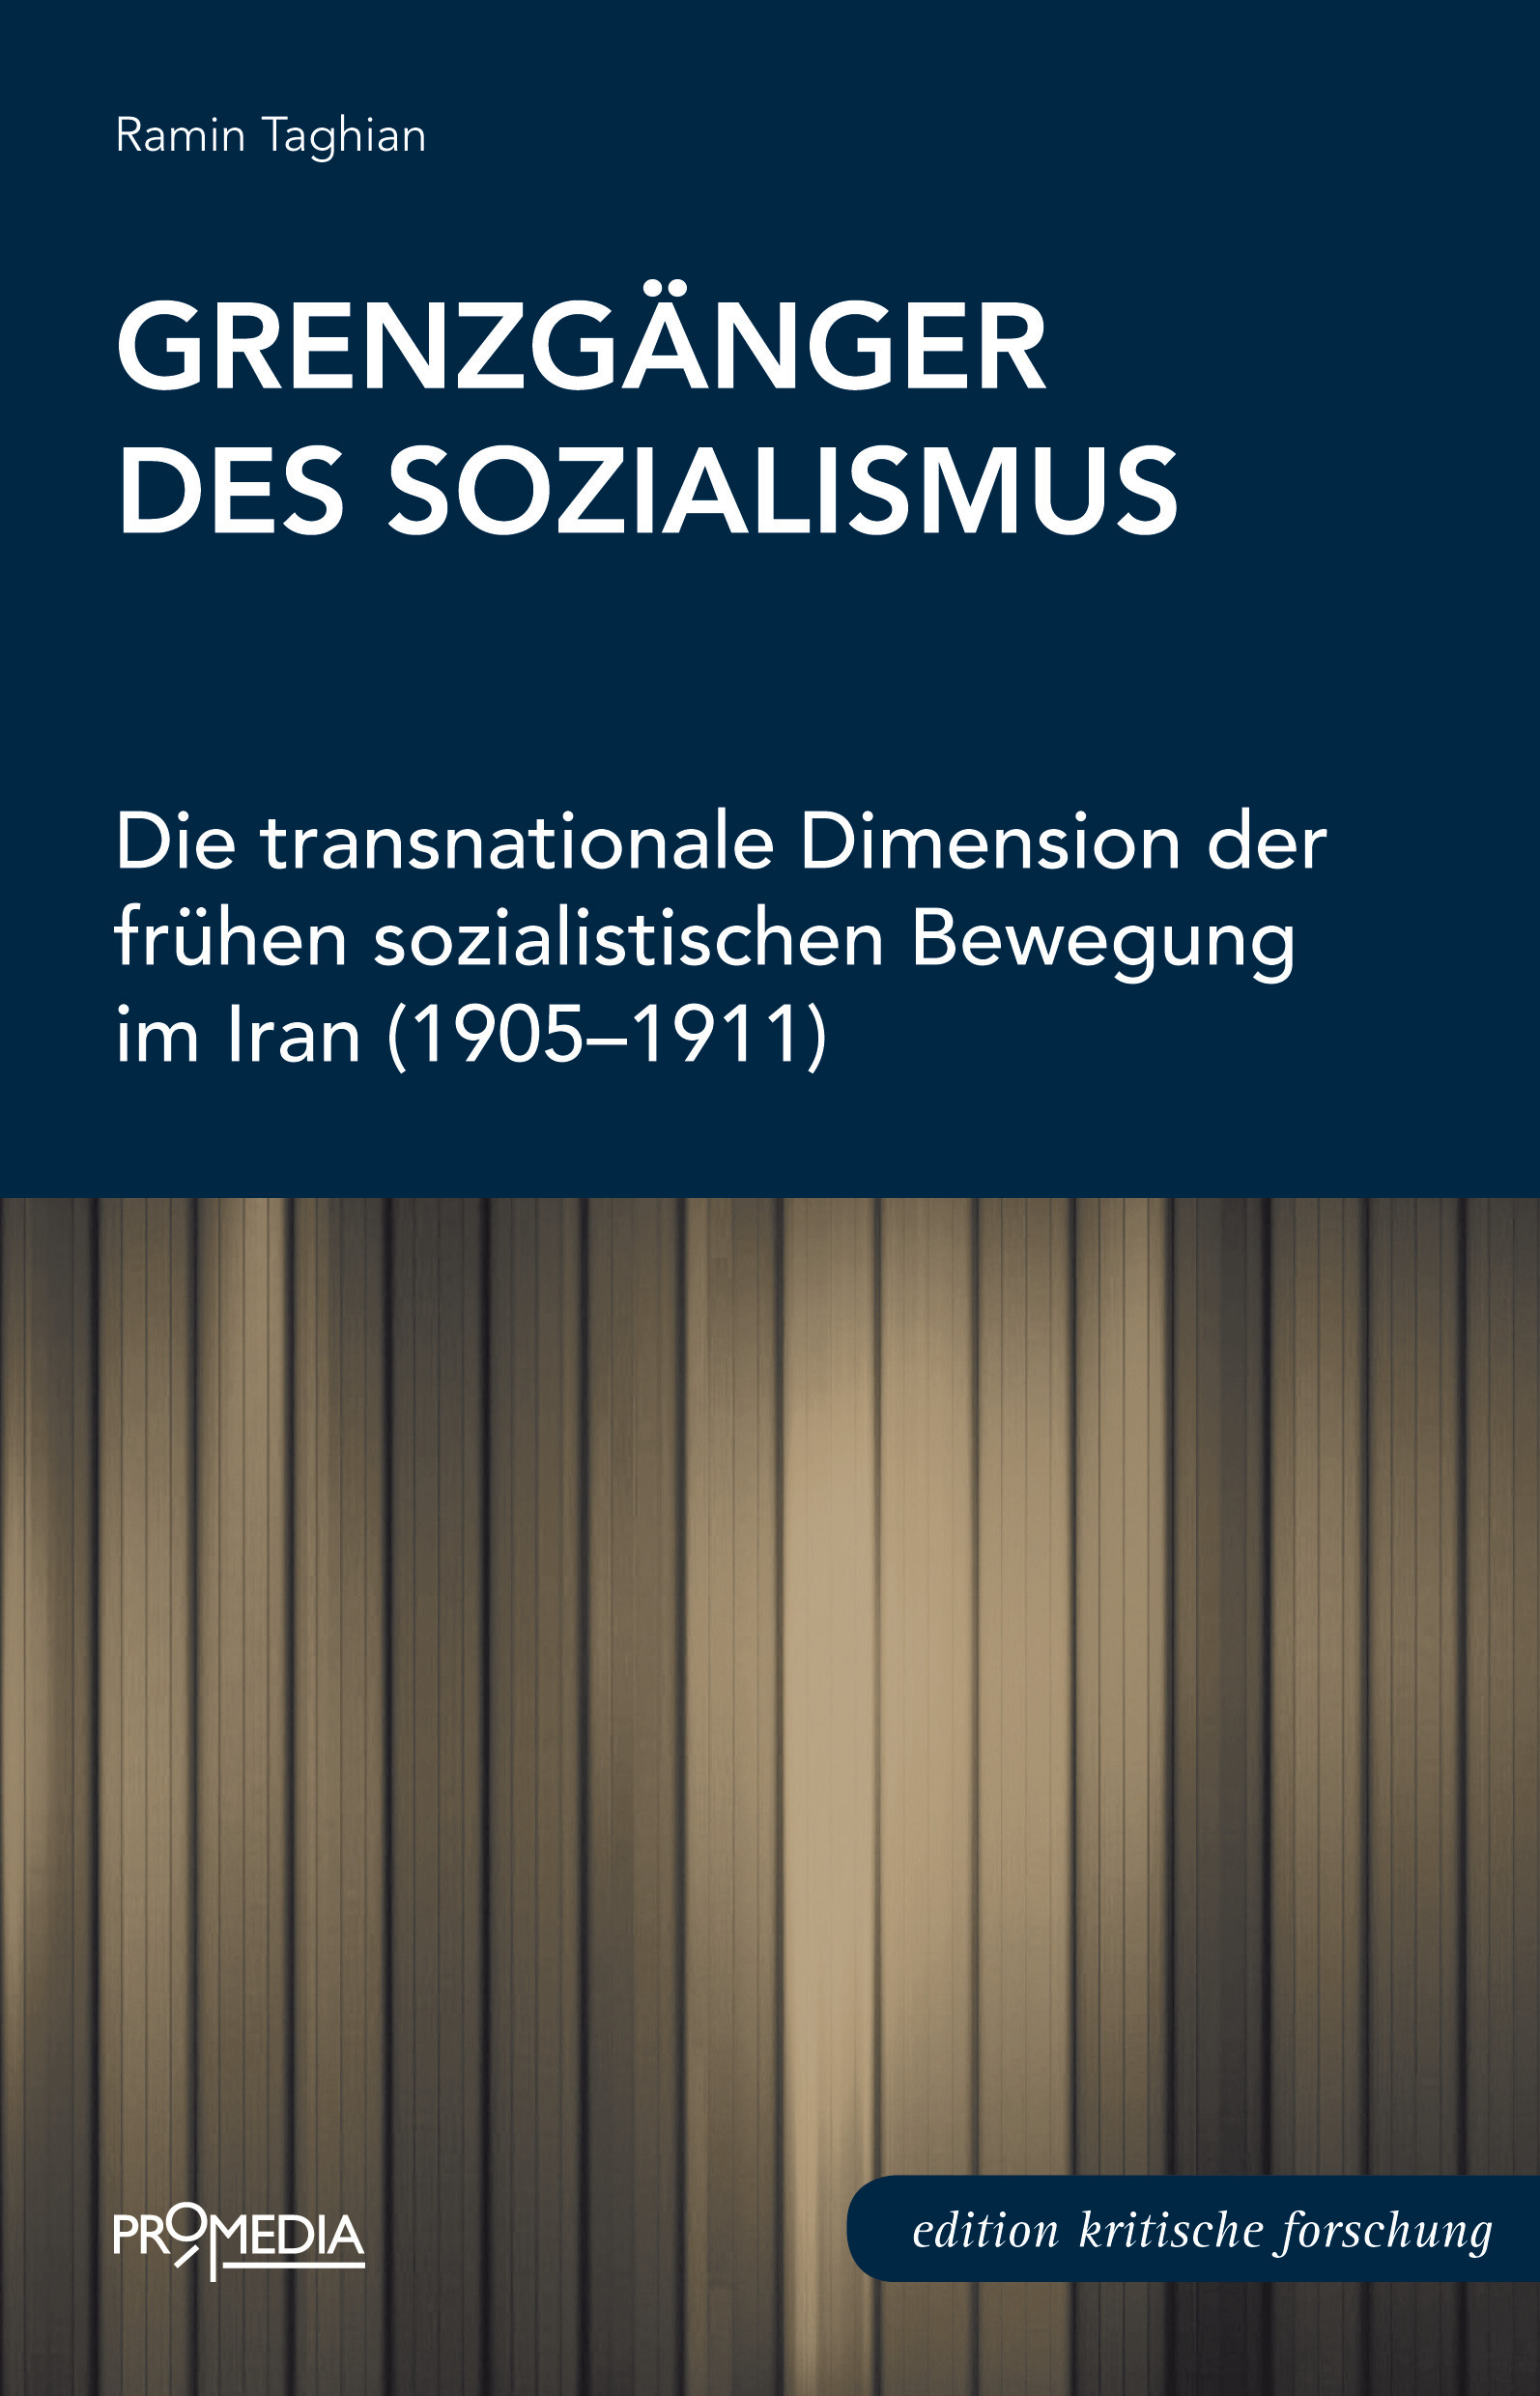 [Cover] Grenzgänger des Sozialismus